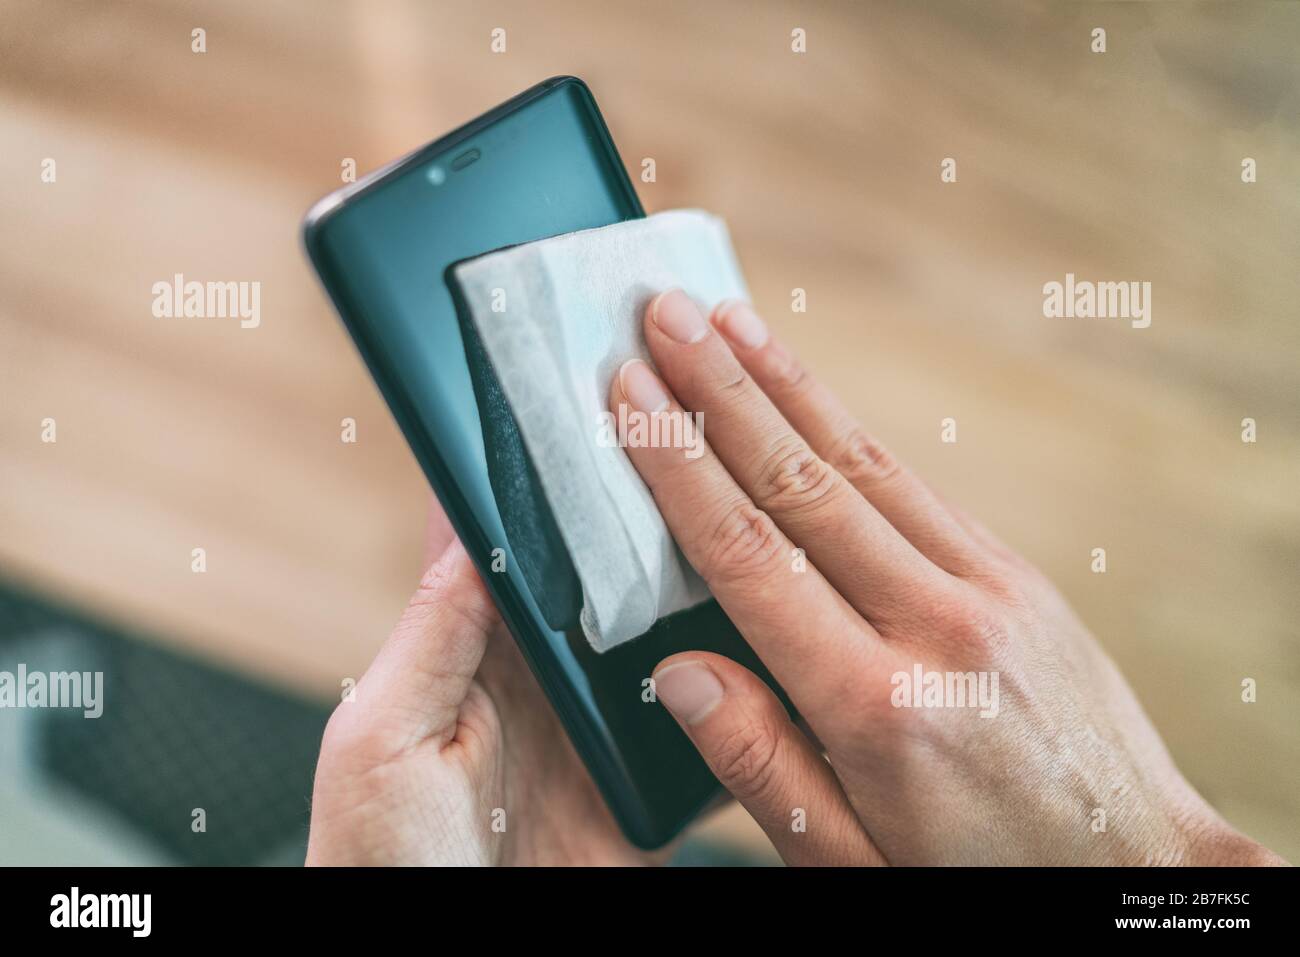 Limpieza de la pantalla del teléfono móvil con toallitas húmedas  desinfectantes para limpiar el smartphone con un barrido preventivo para la  prevención de la contaminación por Coronavirus COVID-19 Fotografía de stock  -